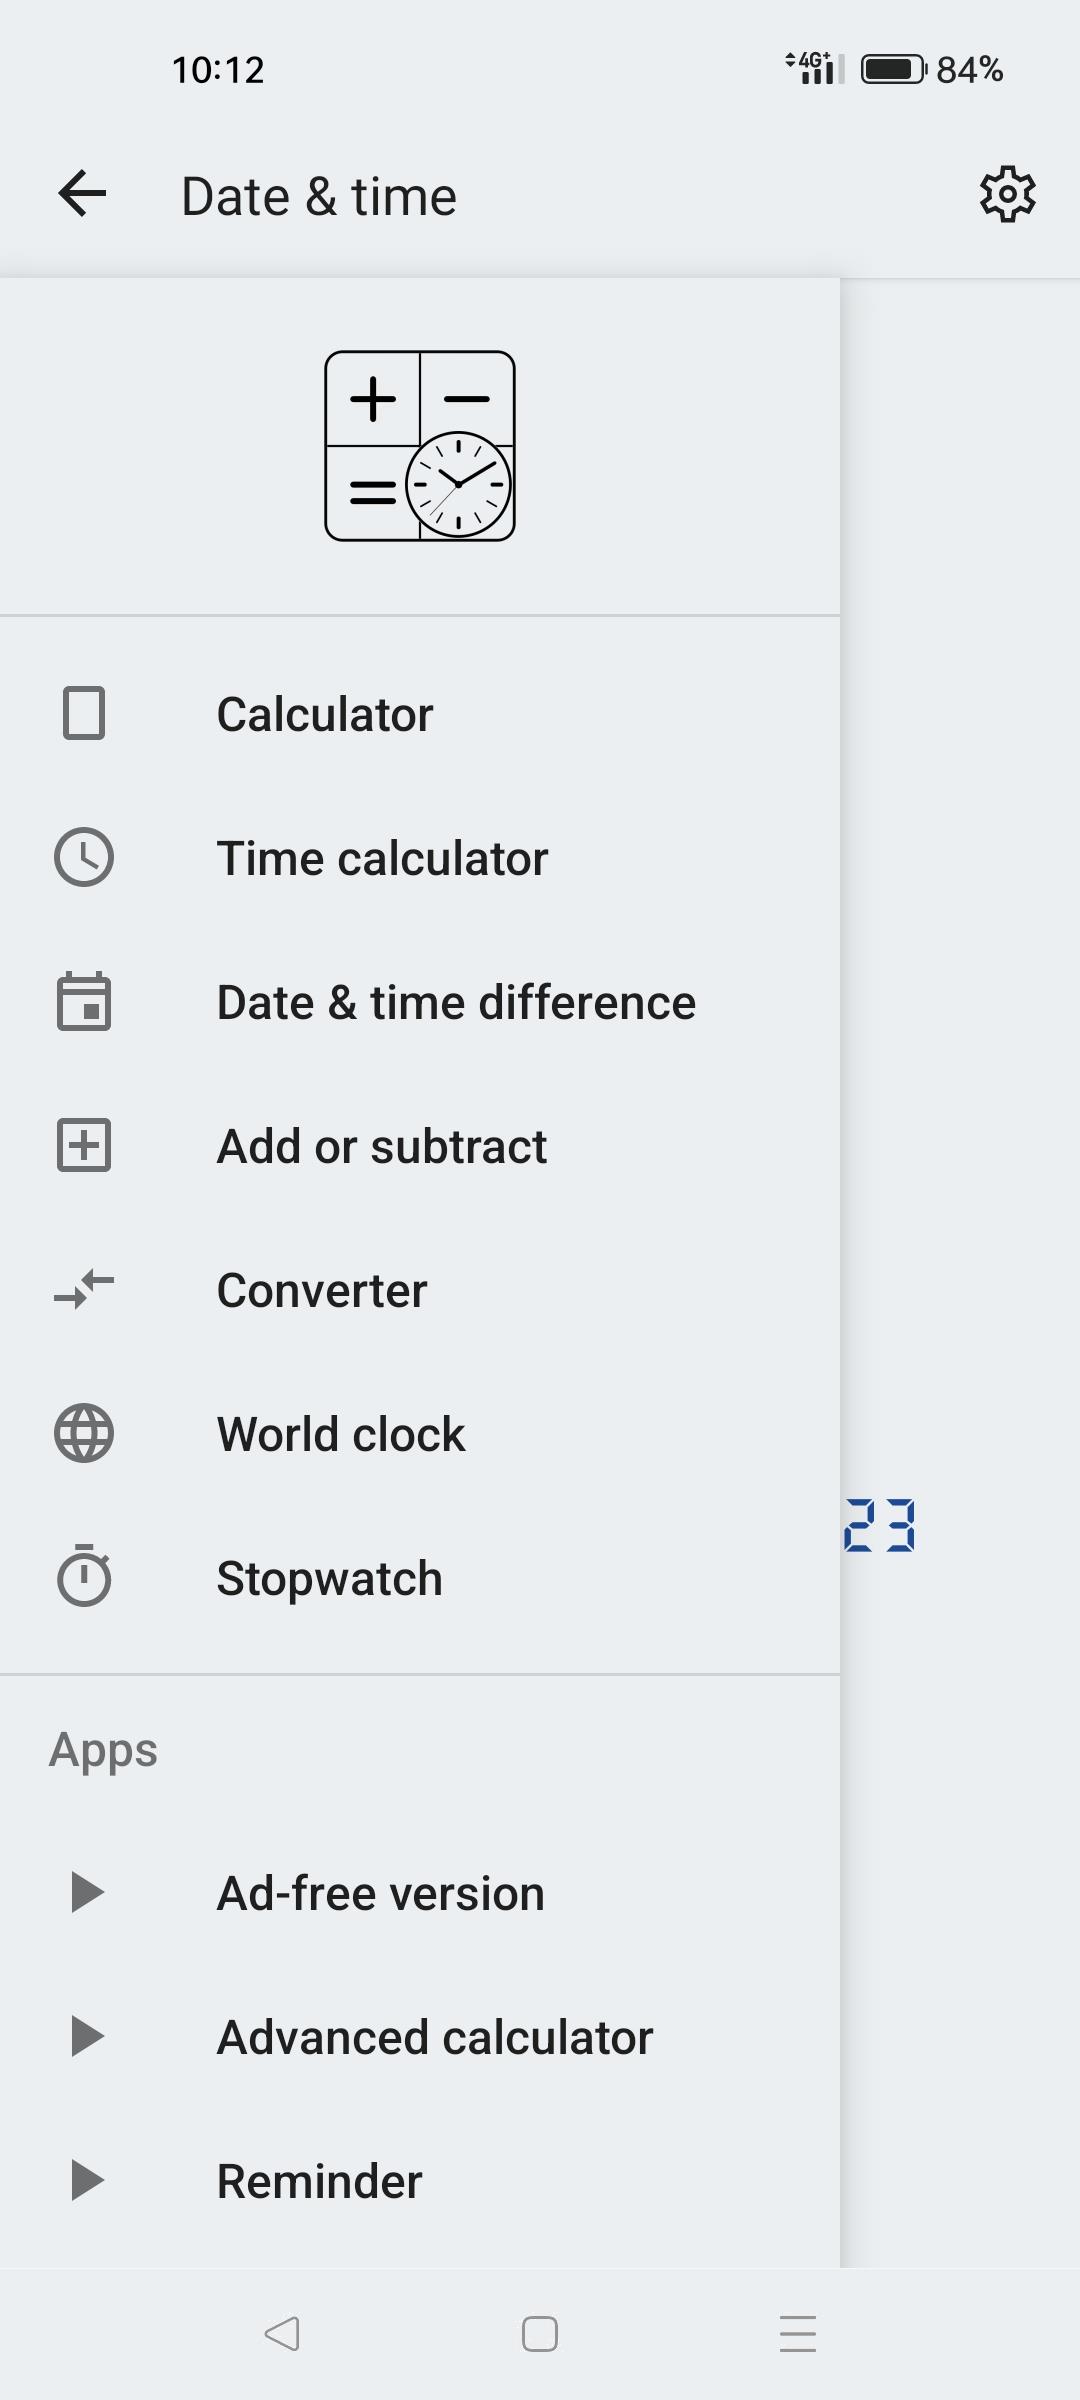 Date & time calculator Screenshot 2